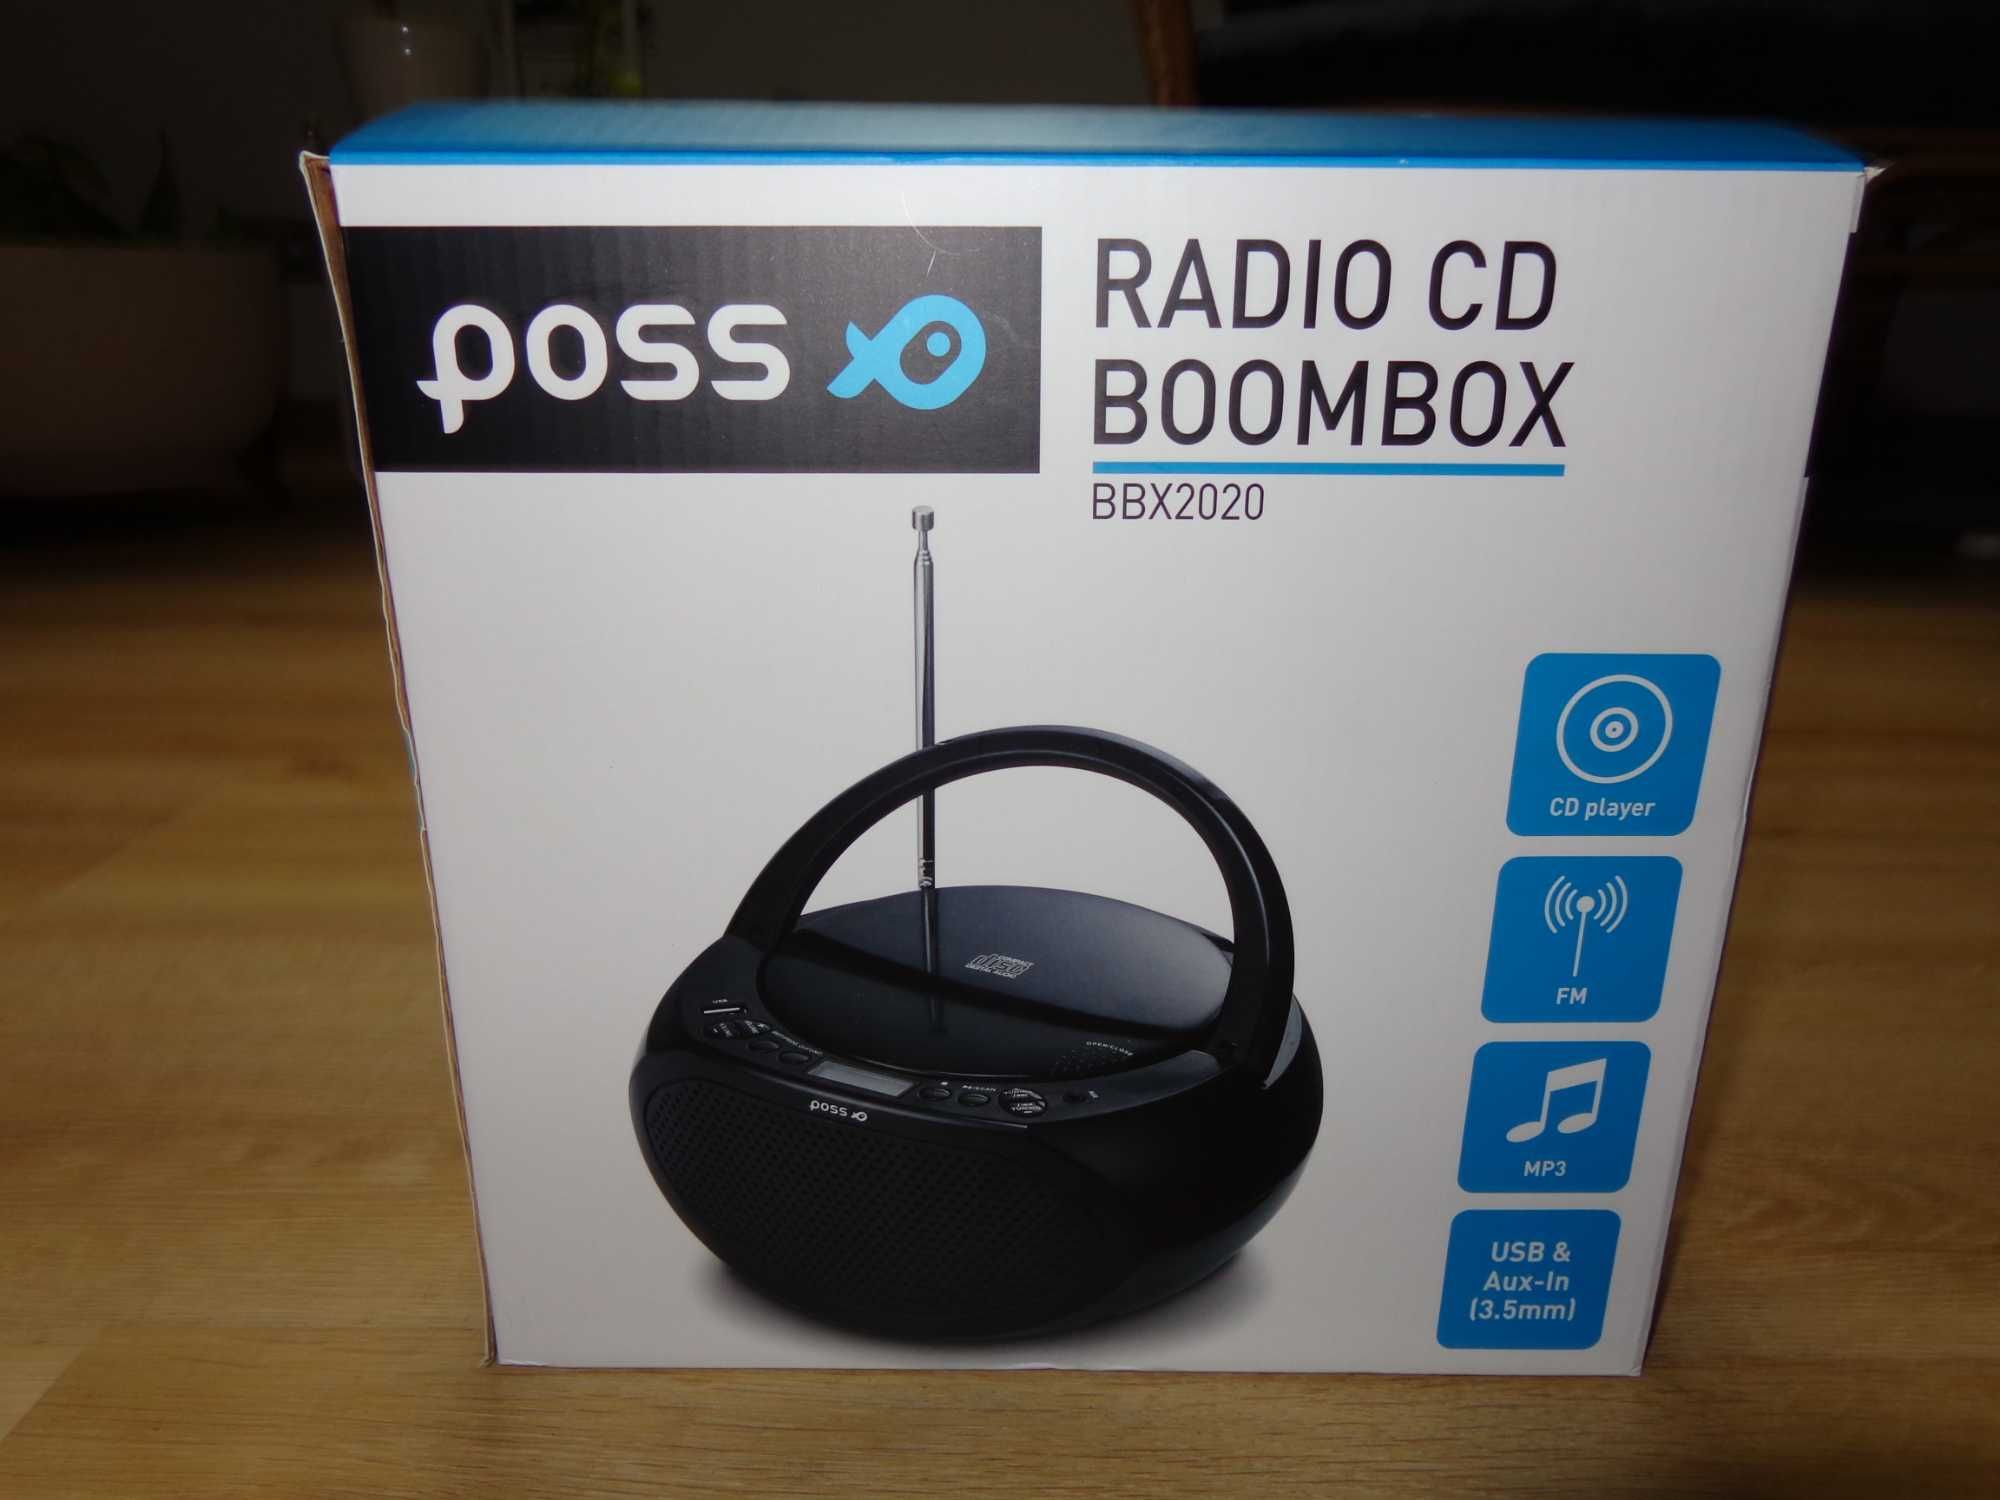 Radio CD Boombox Poss - nowy